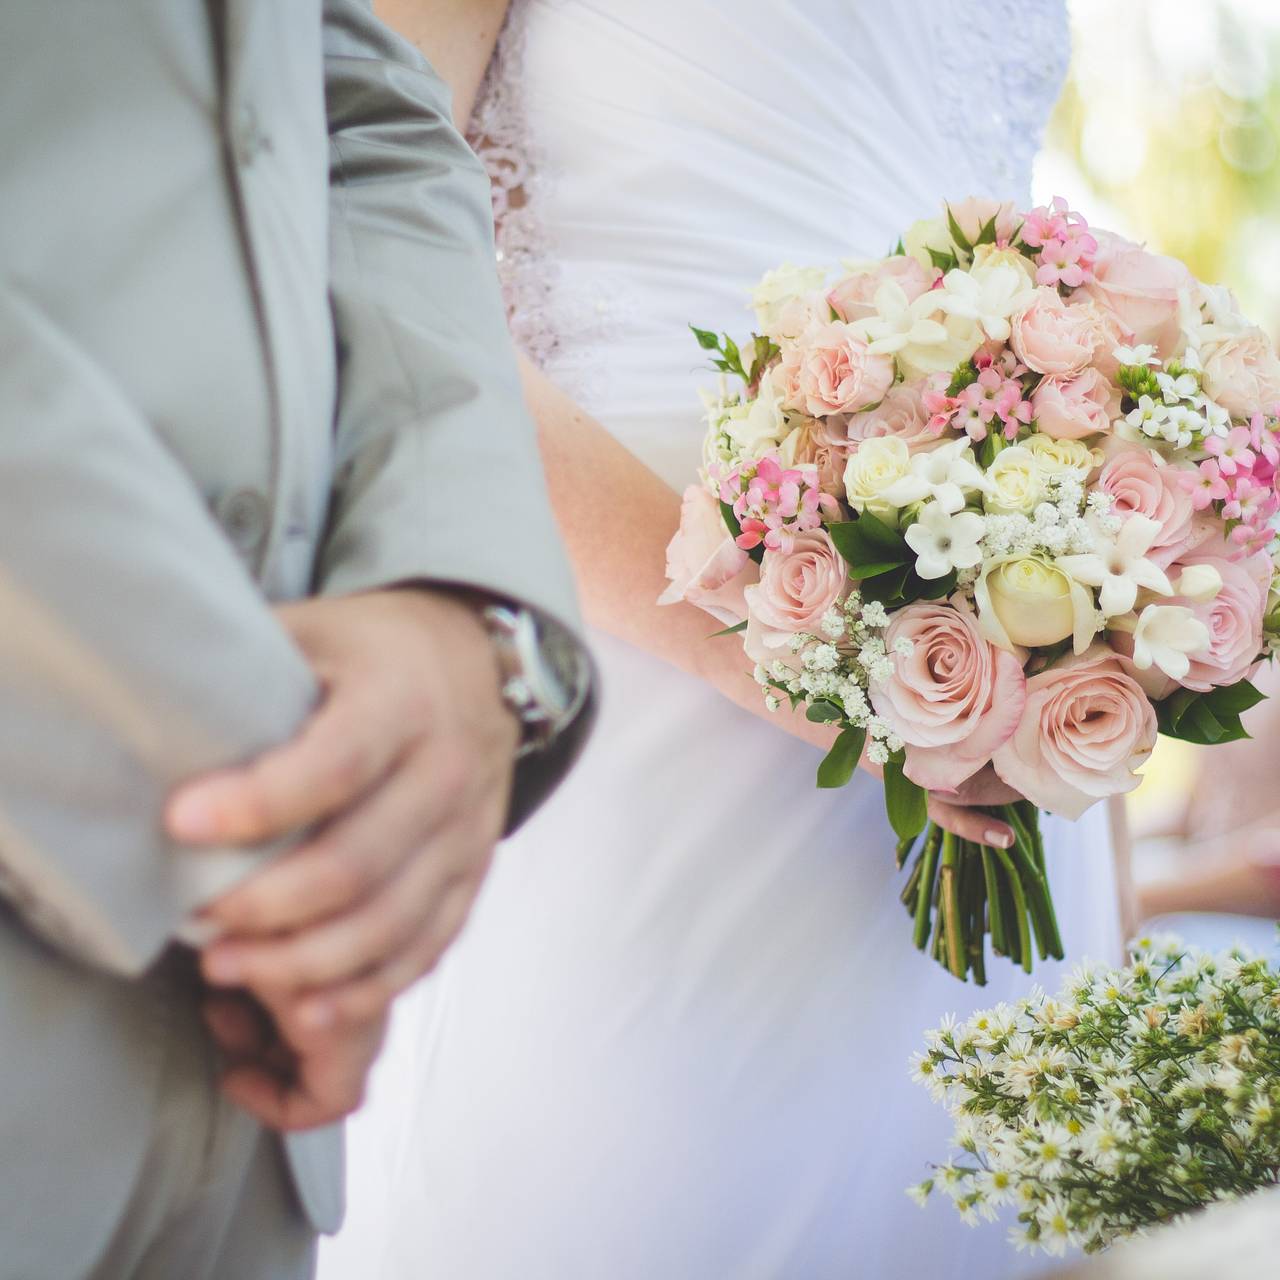 Секс на свадьбе: 4 самых пикантных места для «этого»